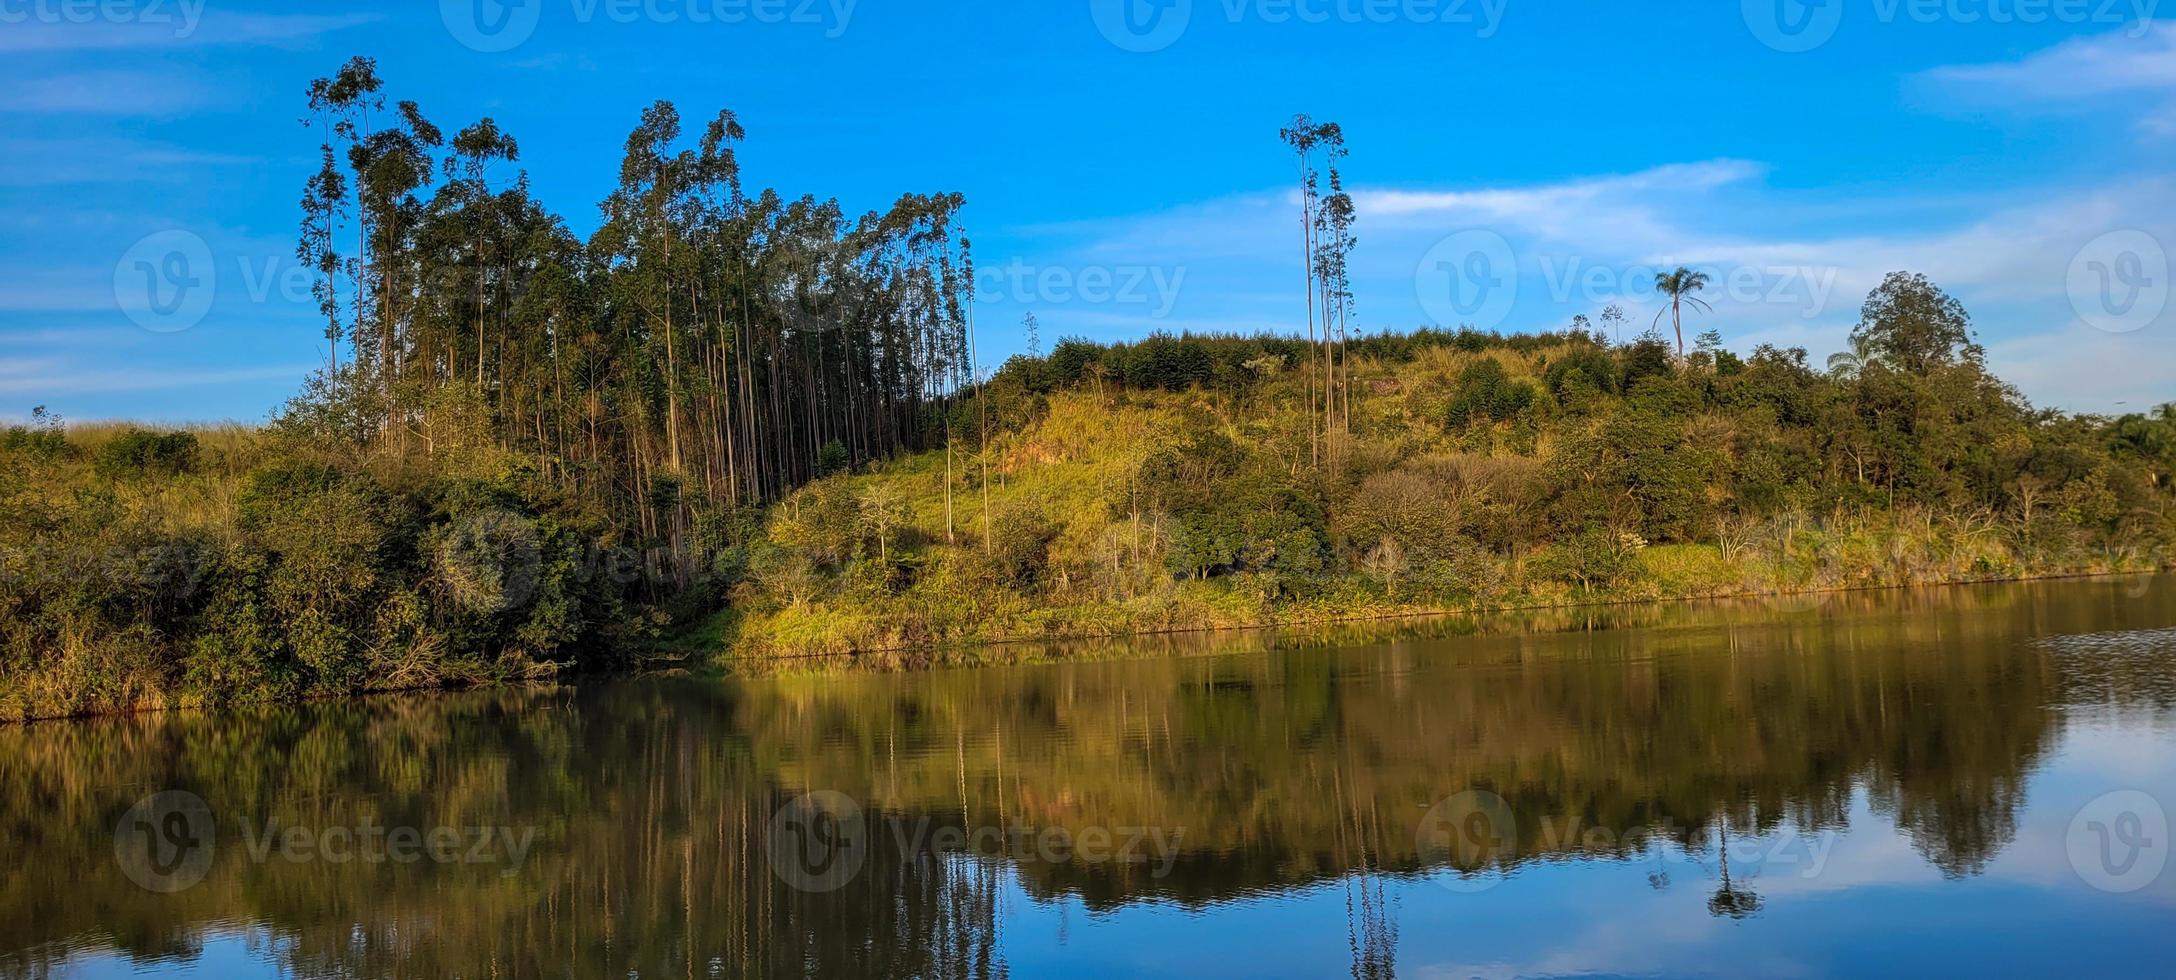 lago com paisagem natural de terras agrícolas na zona rural foto